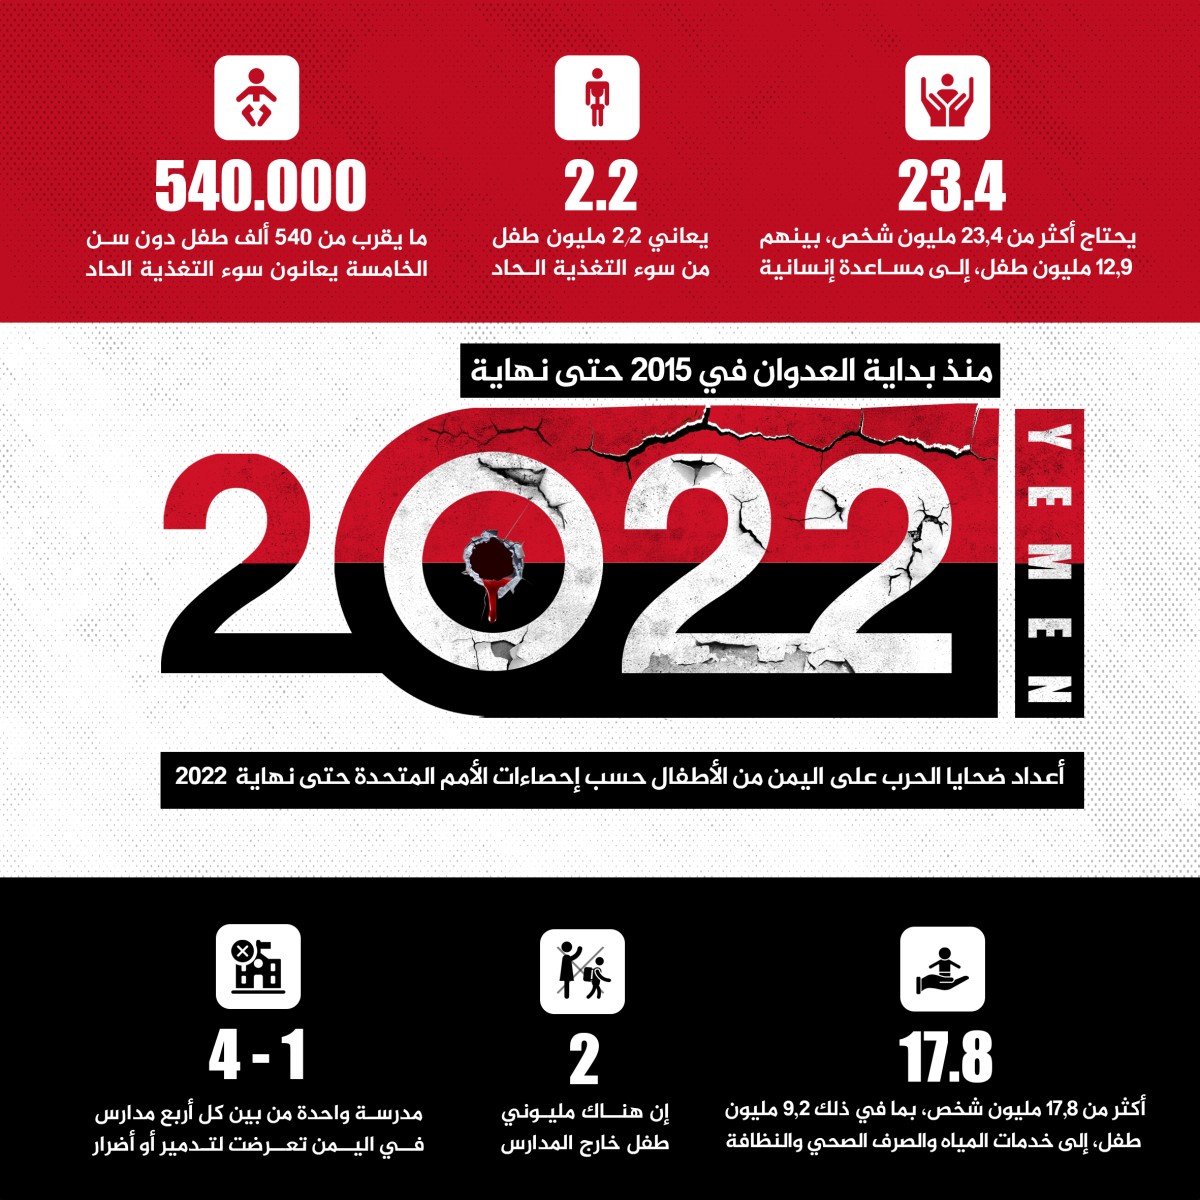 انفوجرافيك / اعداد ضحایا علی الیمن من الاطفال في 2015 حتى نهاية